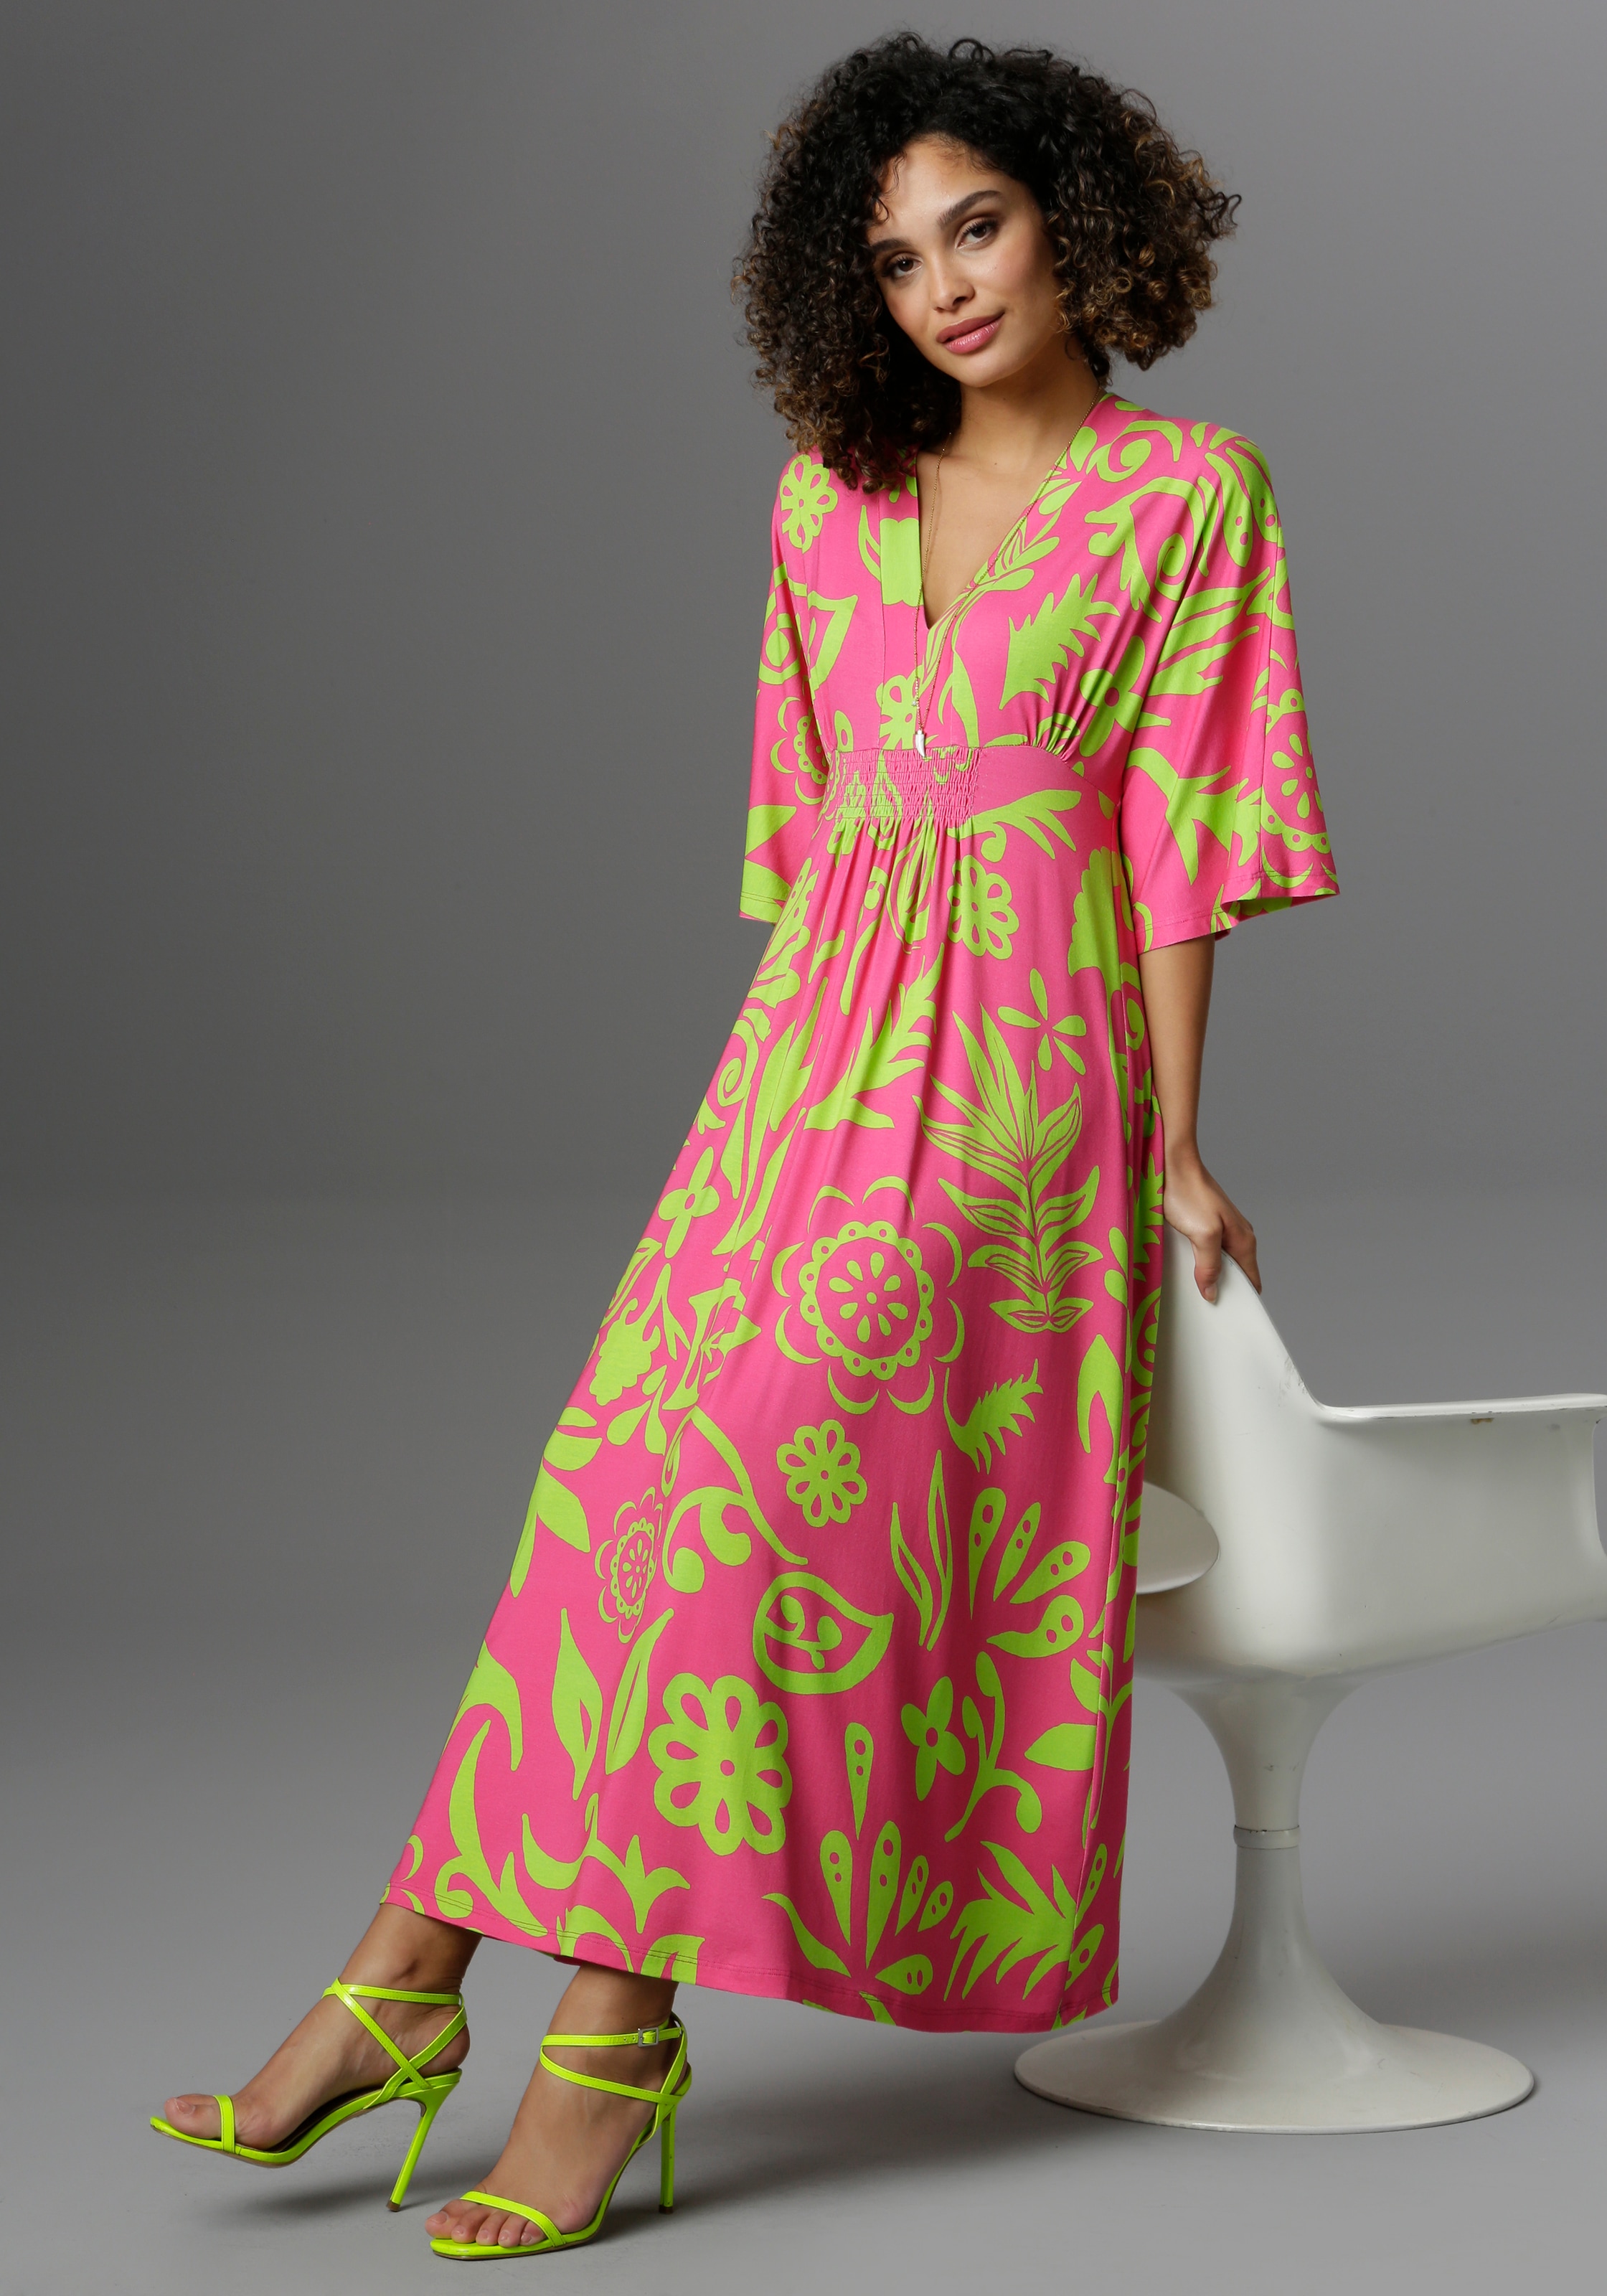 Pinkes Kleid | Kleider jetzt bei OTTO kaufen Pinkfarbene online